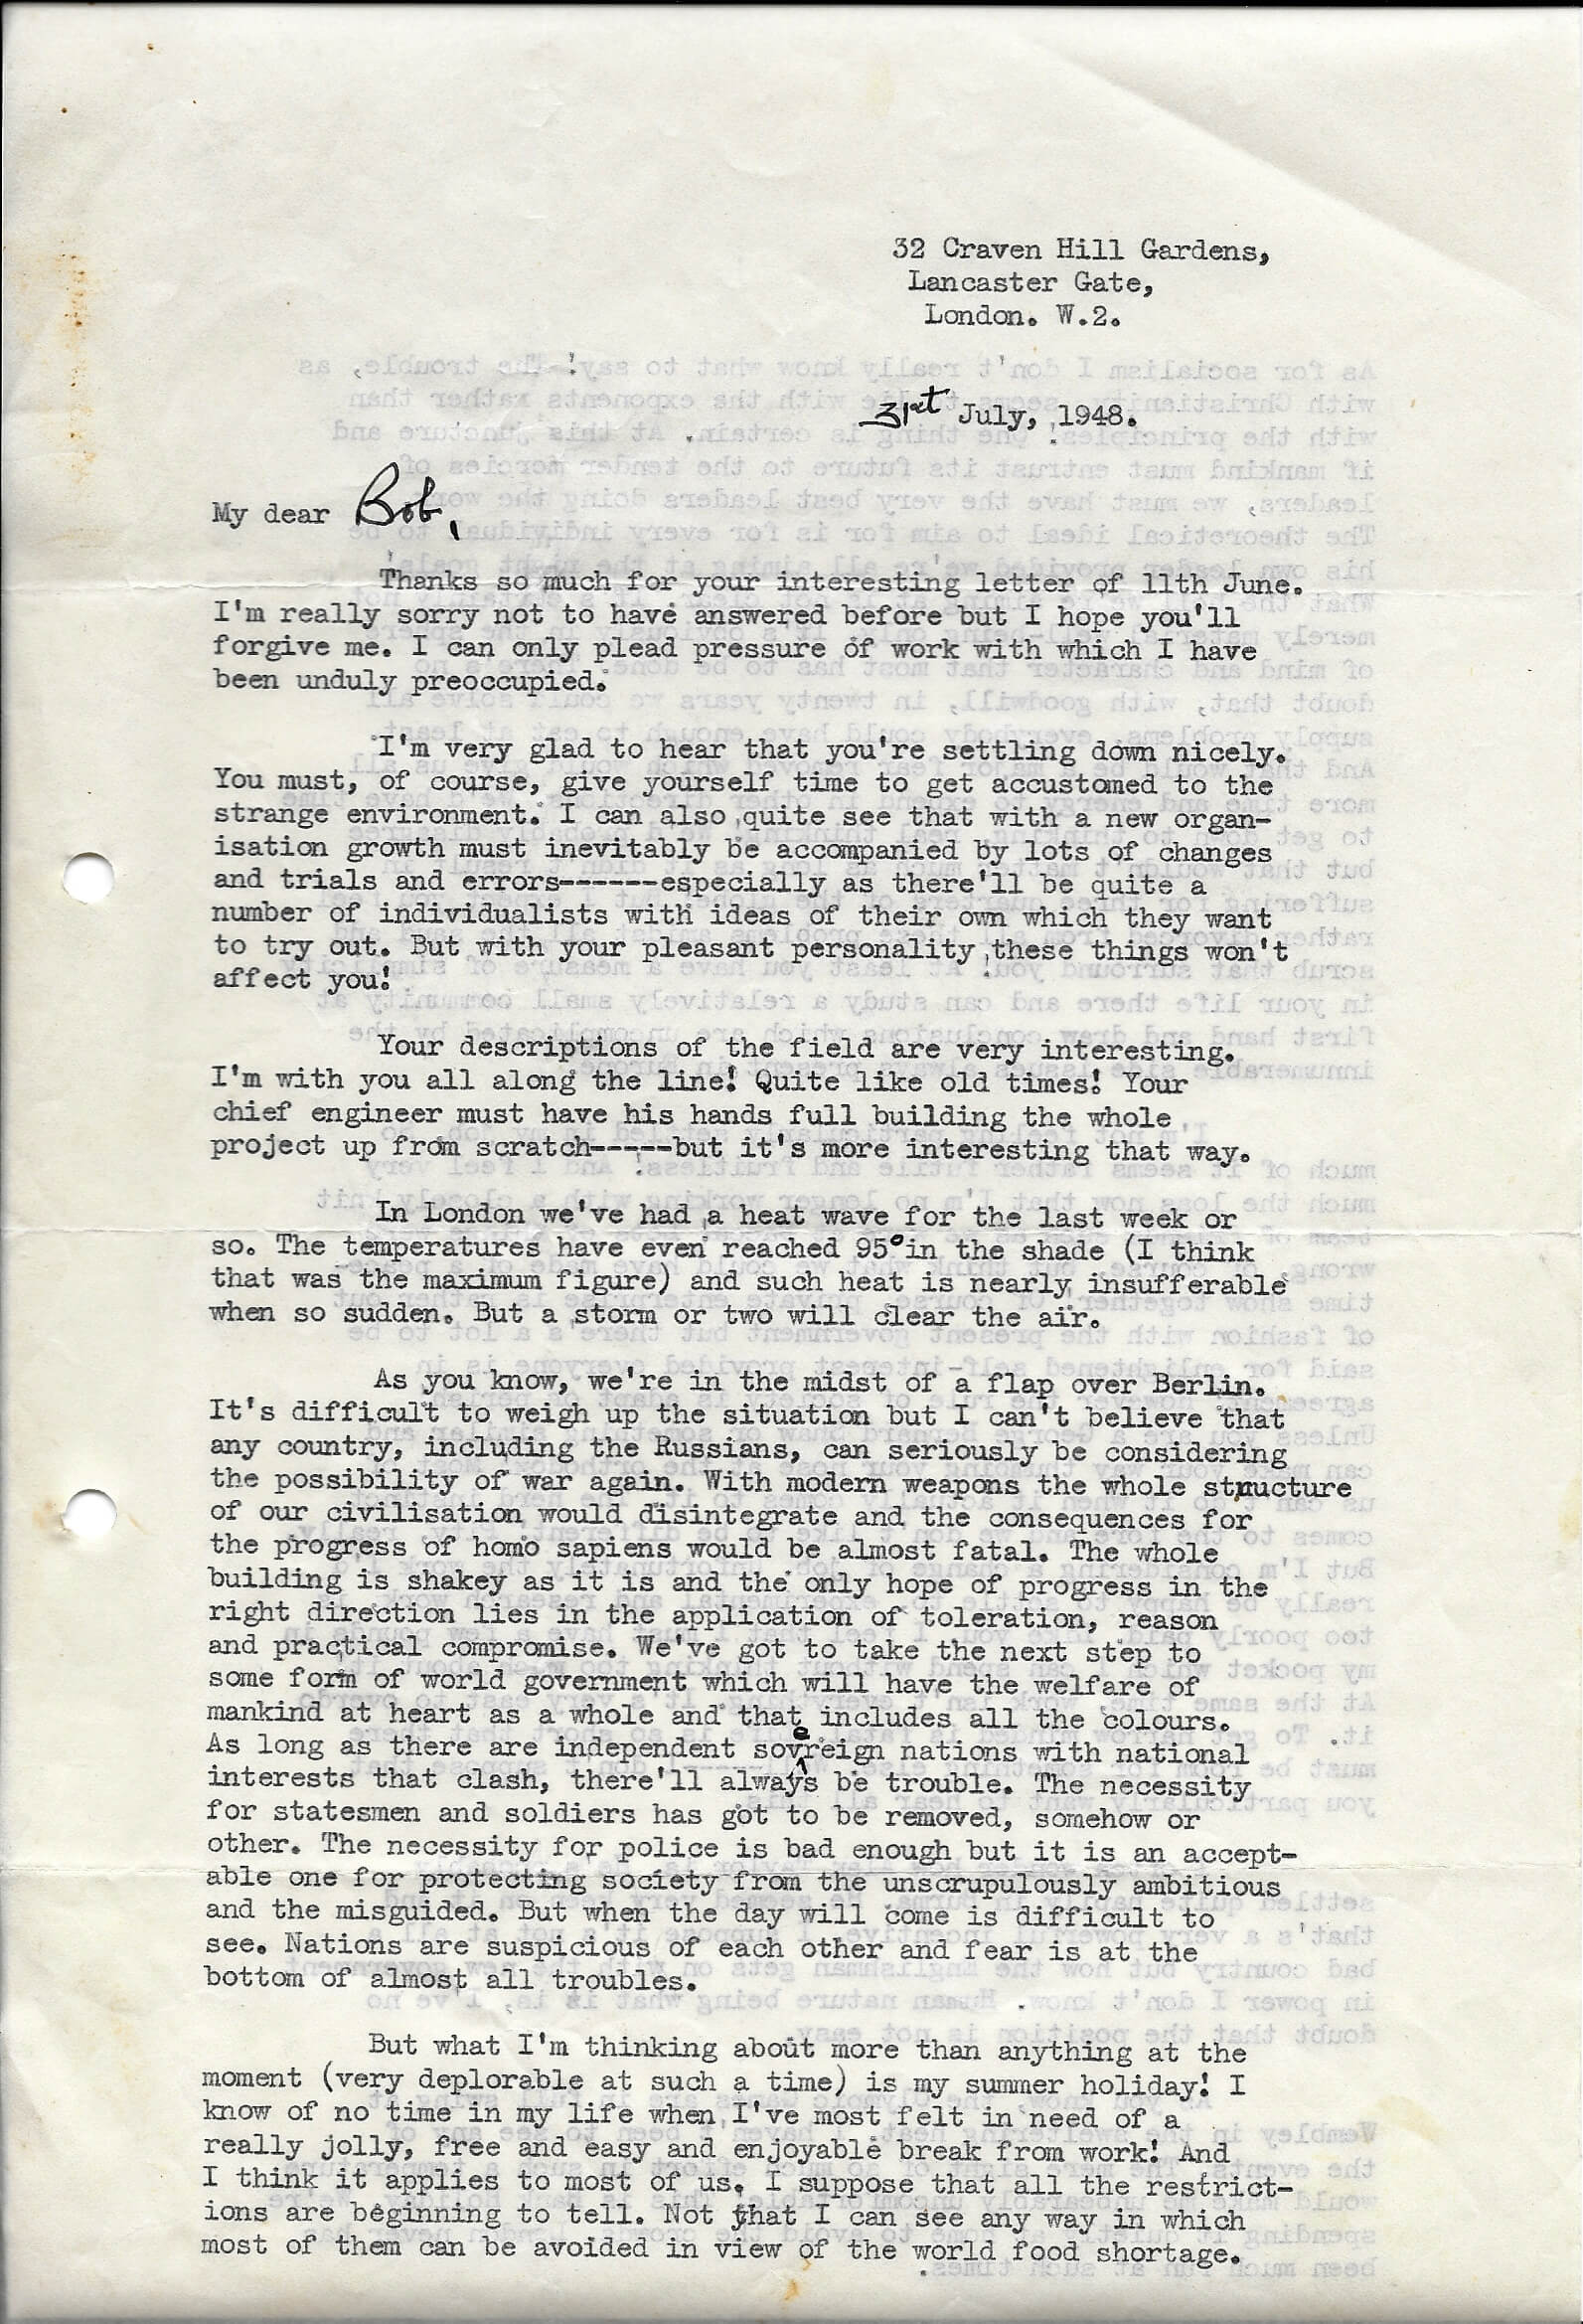 31 Jul 1948 - E D Kassell letter